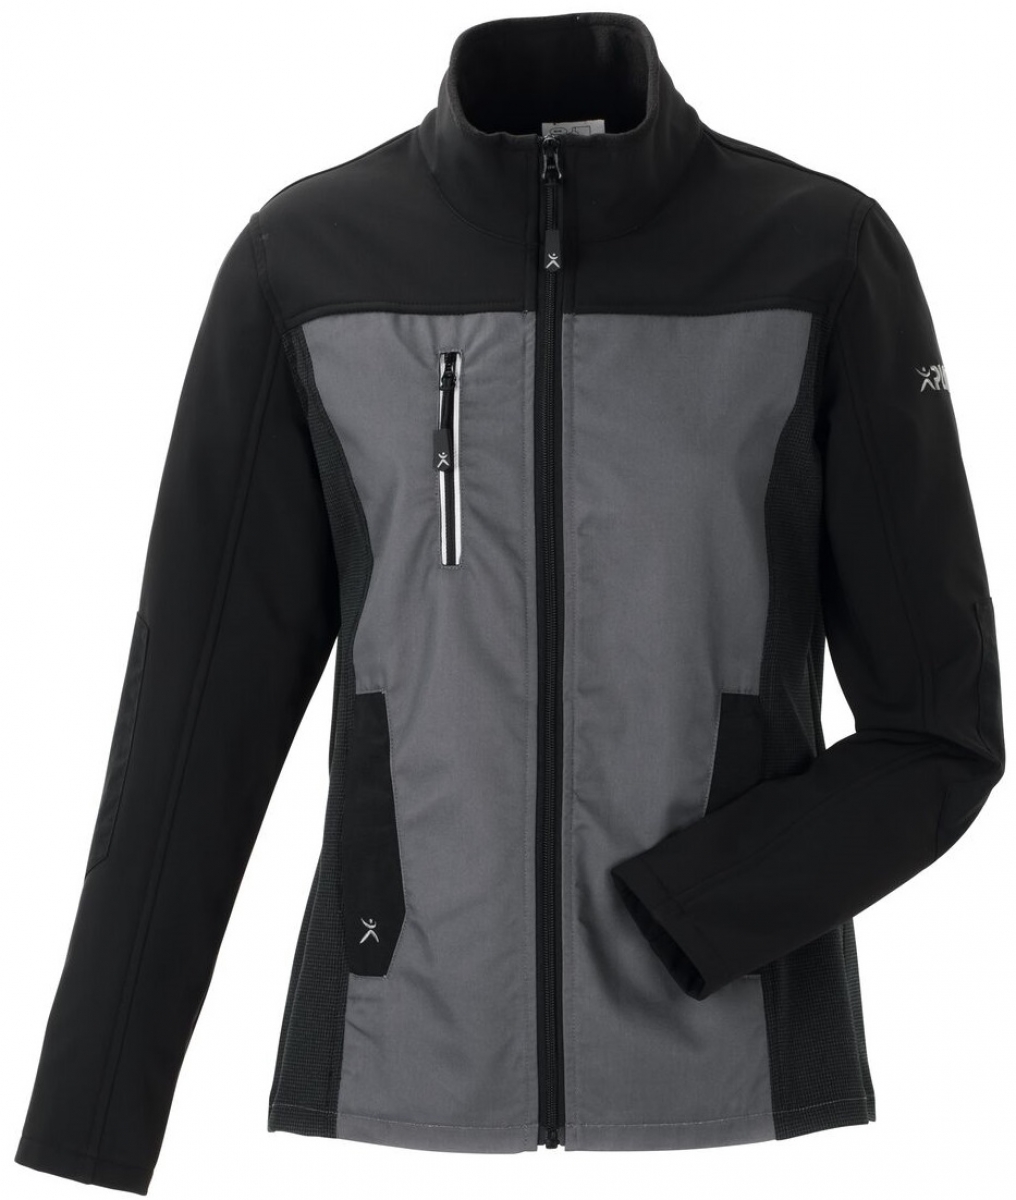 PLANAM-Workwear, Damen-Hybridjacke, Norit, 245 g/m, schiefer/schwarz